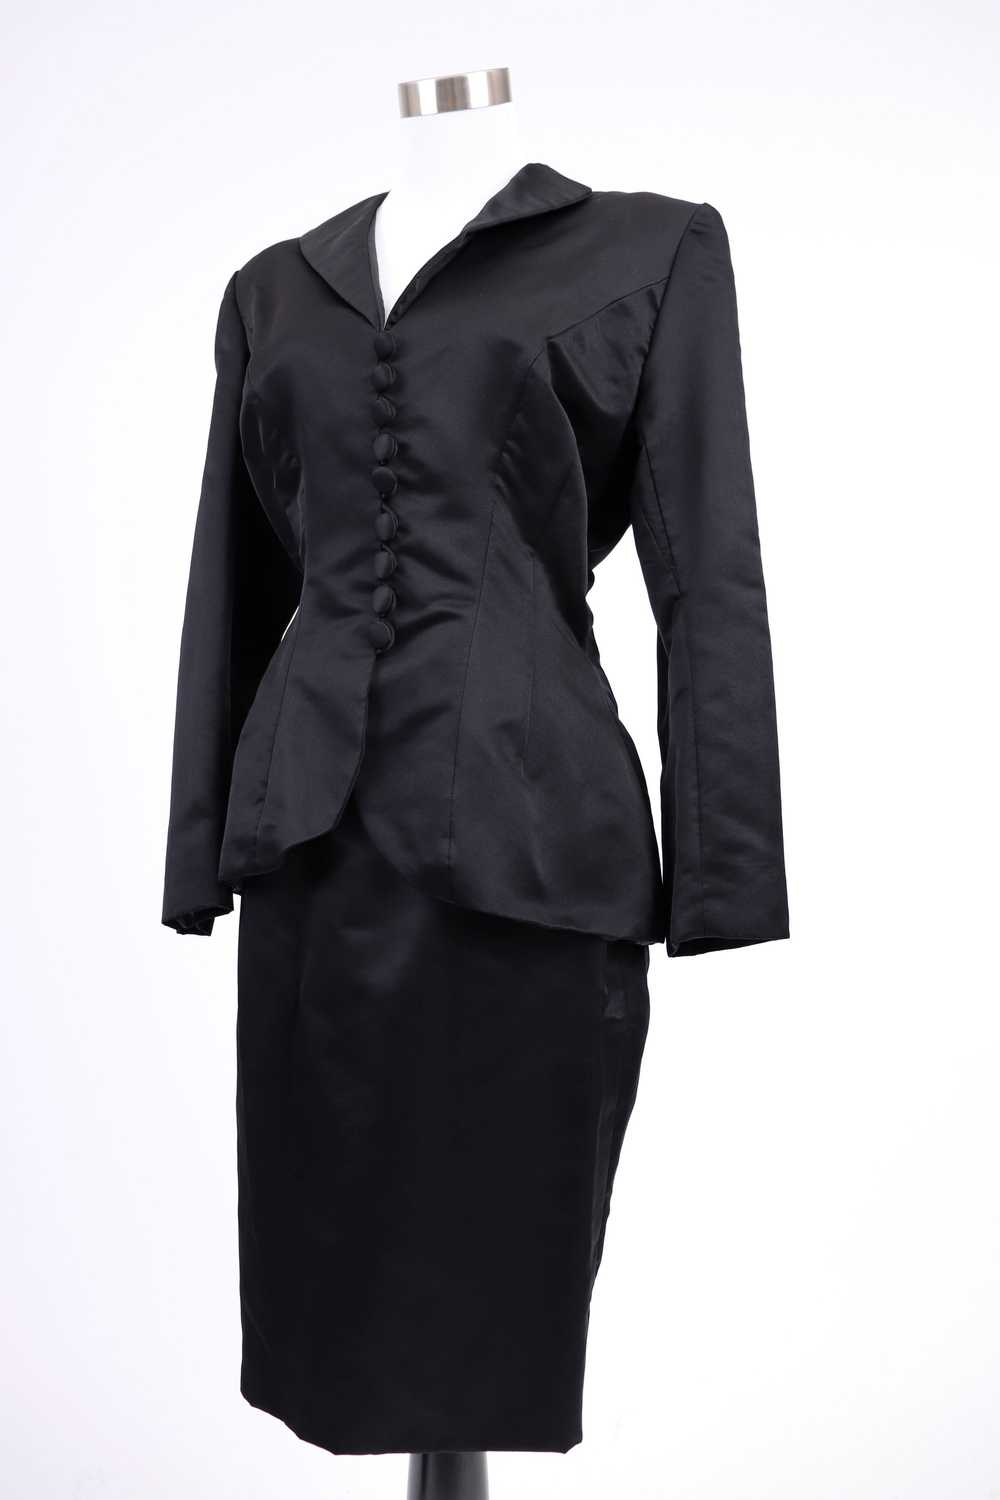 80's Bob Mackie Black Satin Skirt Suit M/L - image 5